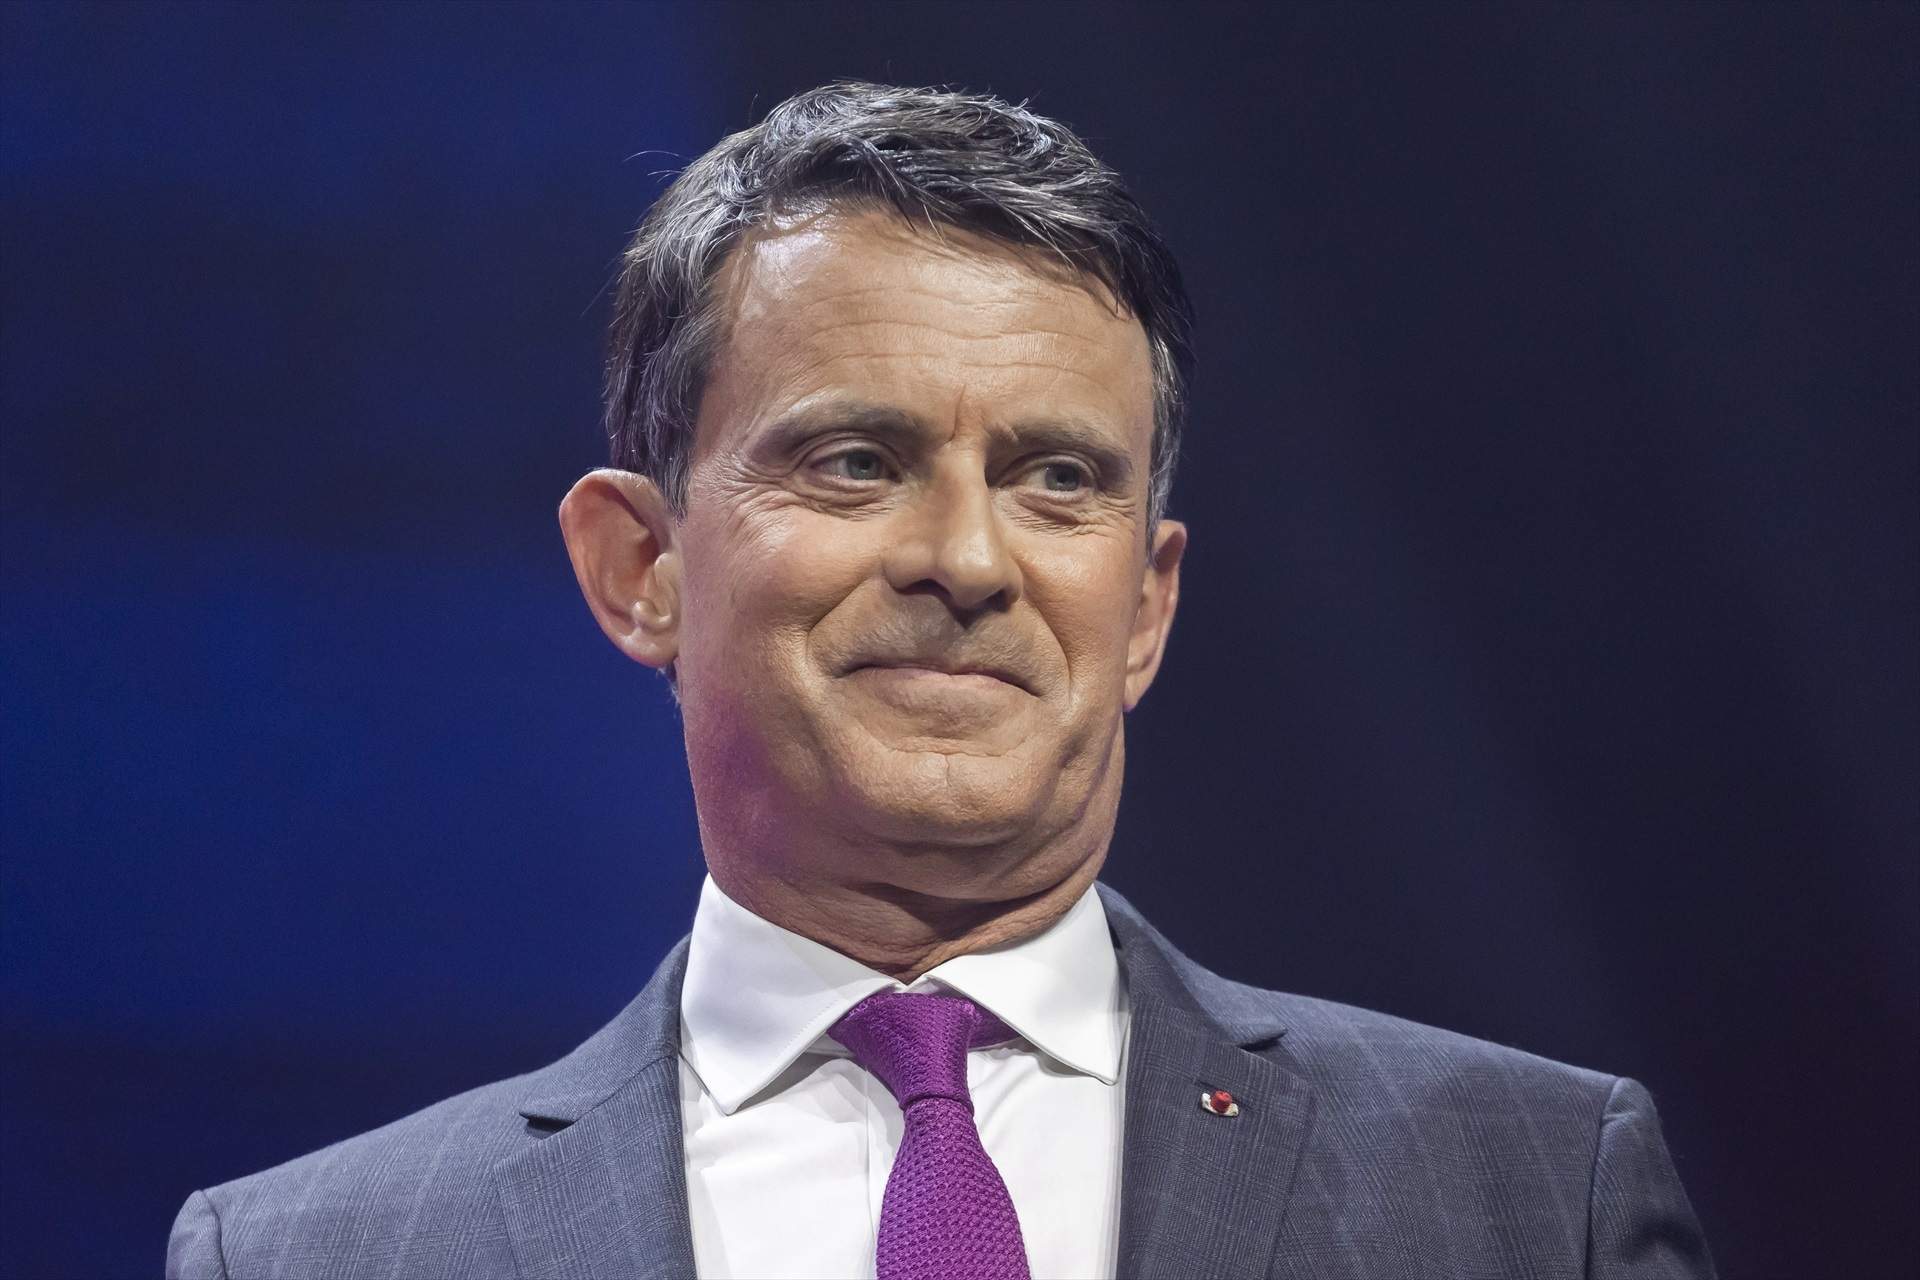 L'alerta de Manuel Valls sobre l'arribada al poder de l'extrema dreta a França